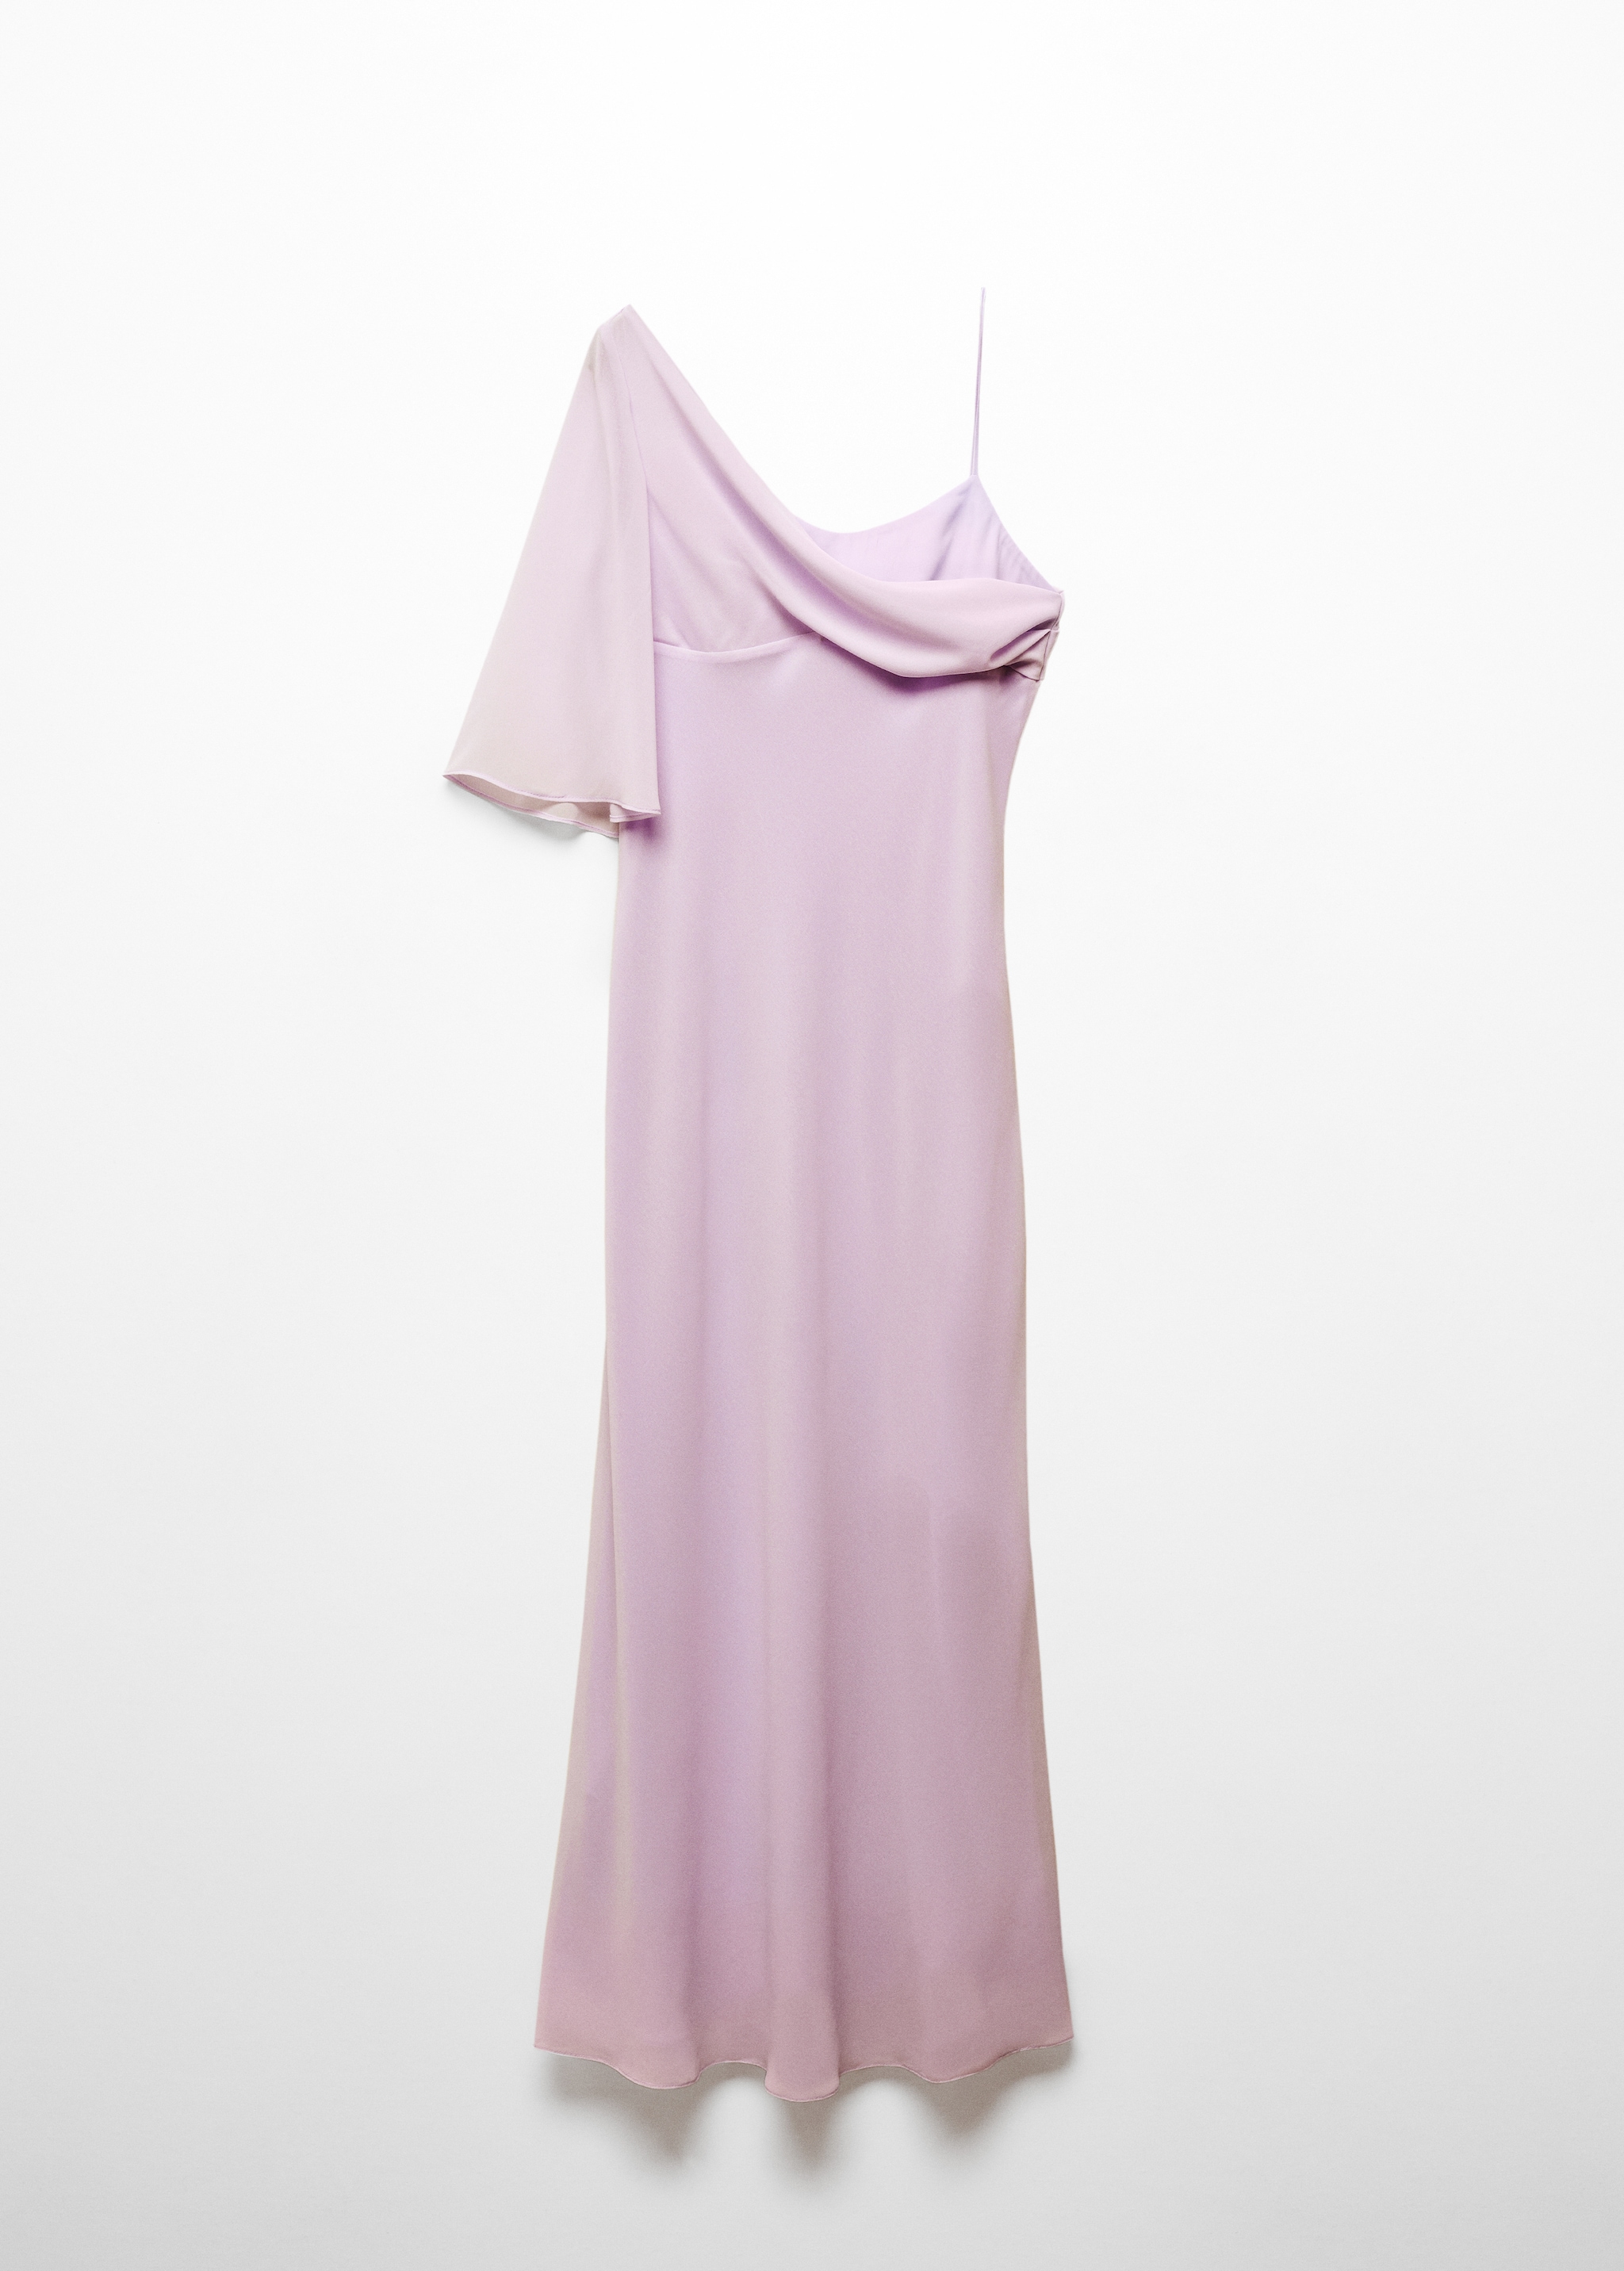 Асимметричное платье с расклешенными рукавами - Изделие без модели